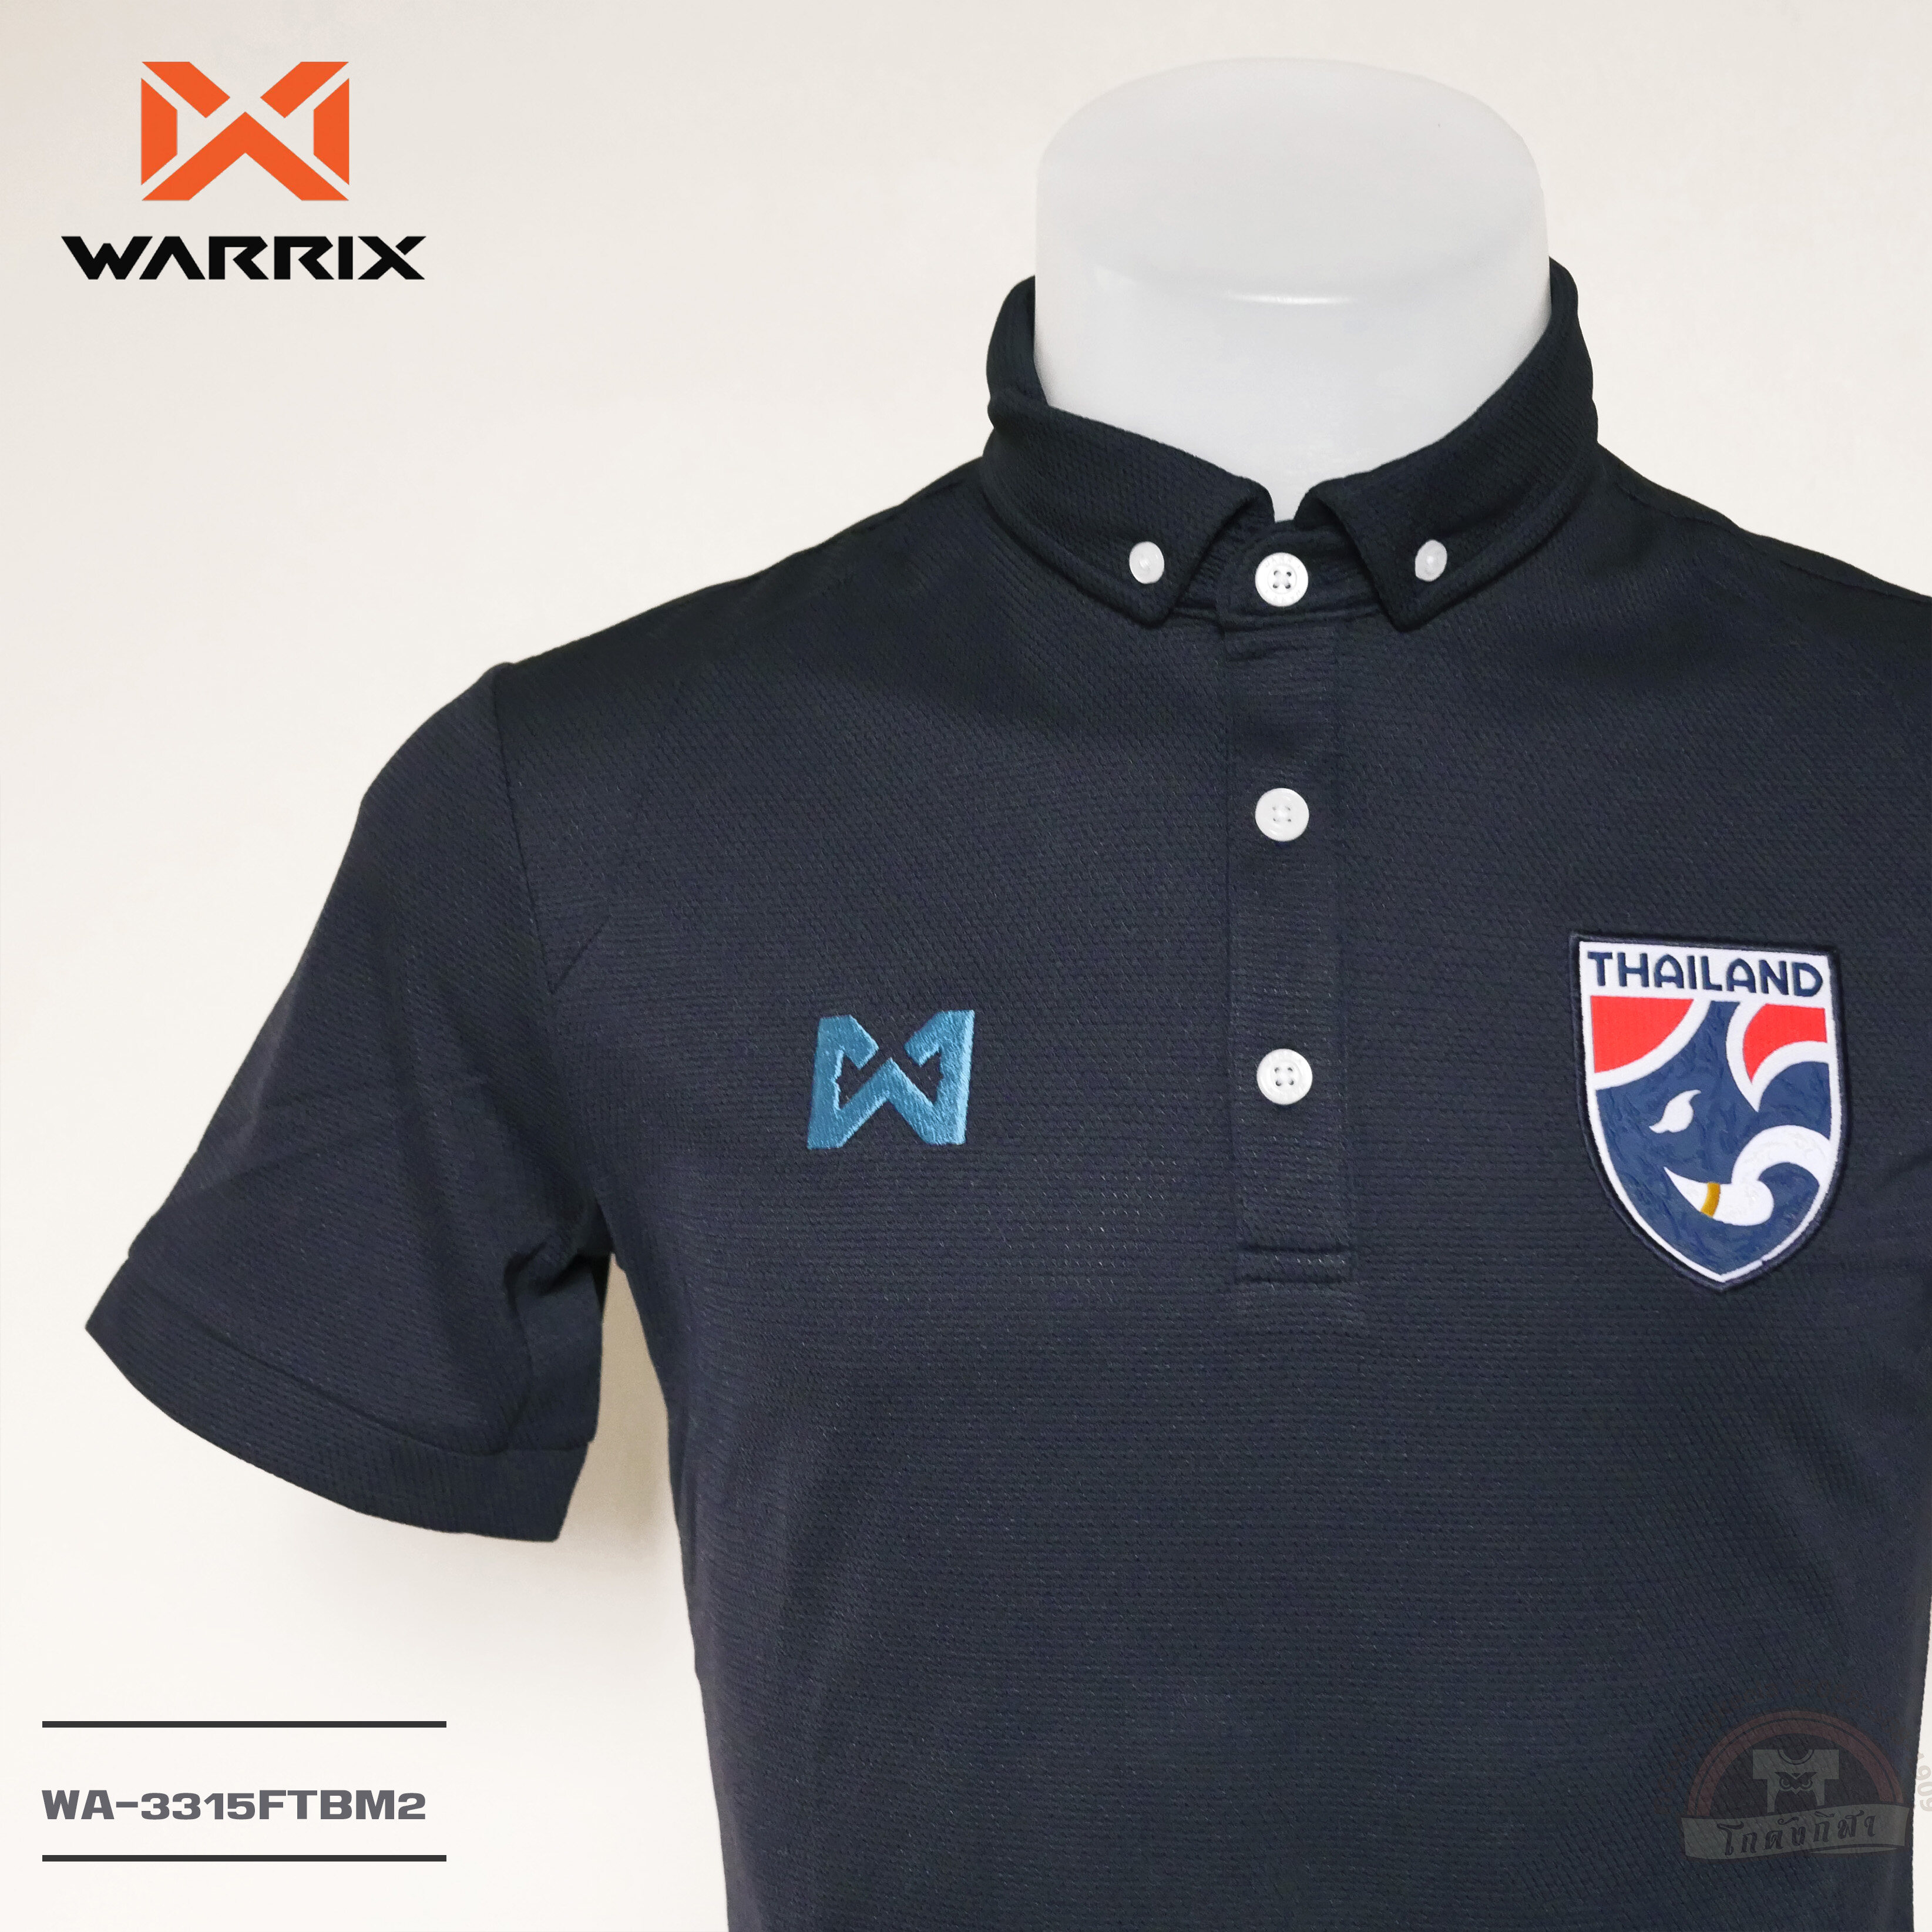 WARRIX เสื้อโปโล ทีมชาติไทย 2018 WA-3315FTBM2 วาริกซ์ วอริกซ์ ของแท้ 100%